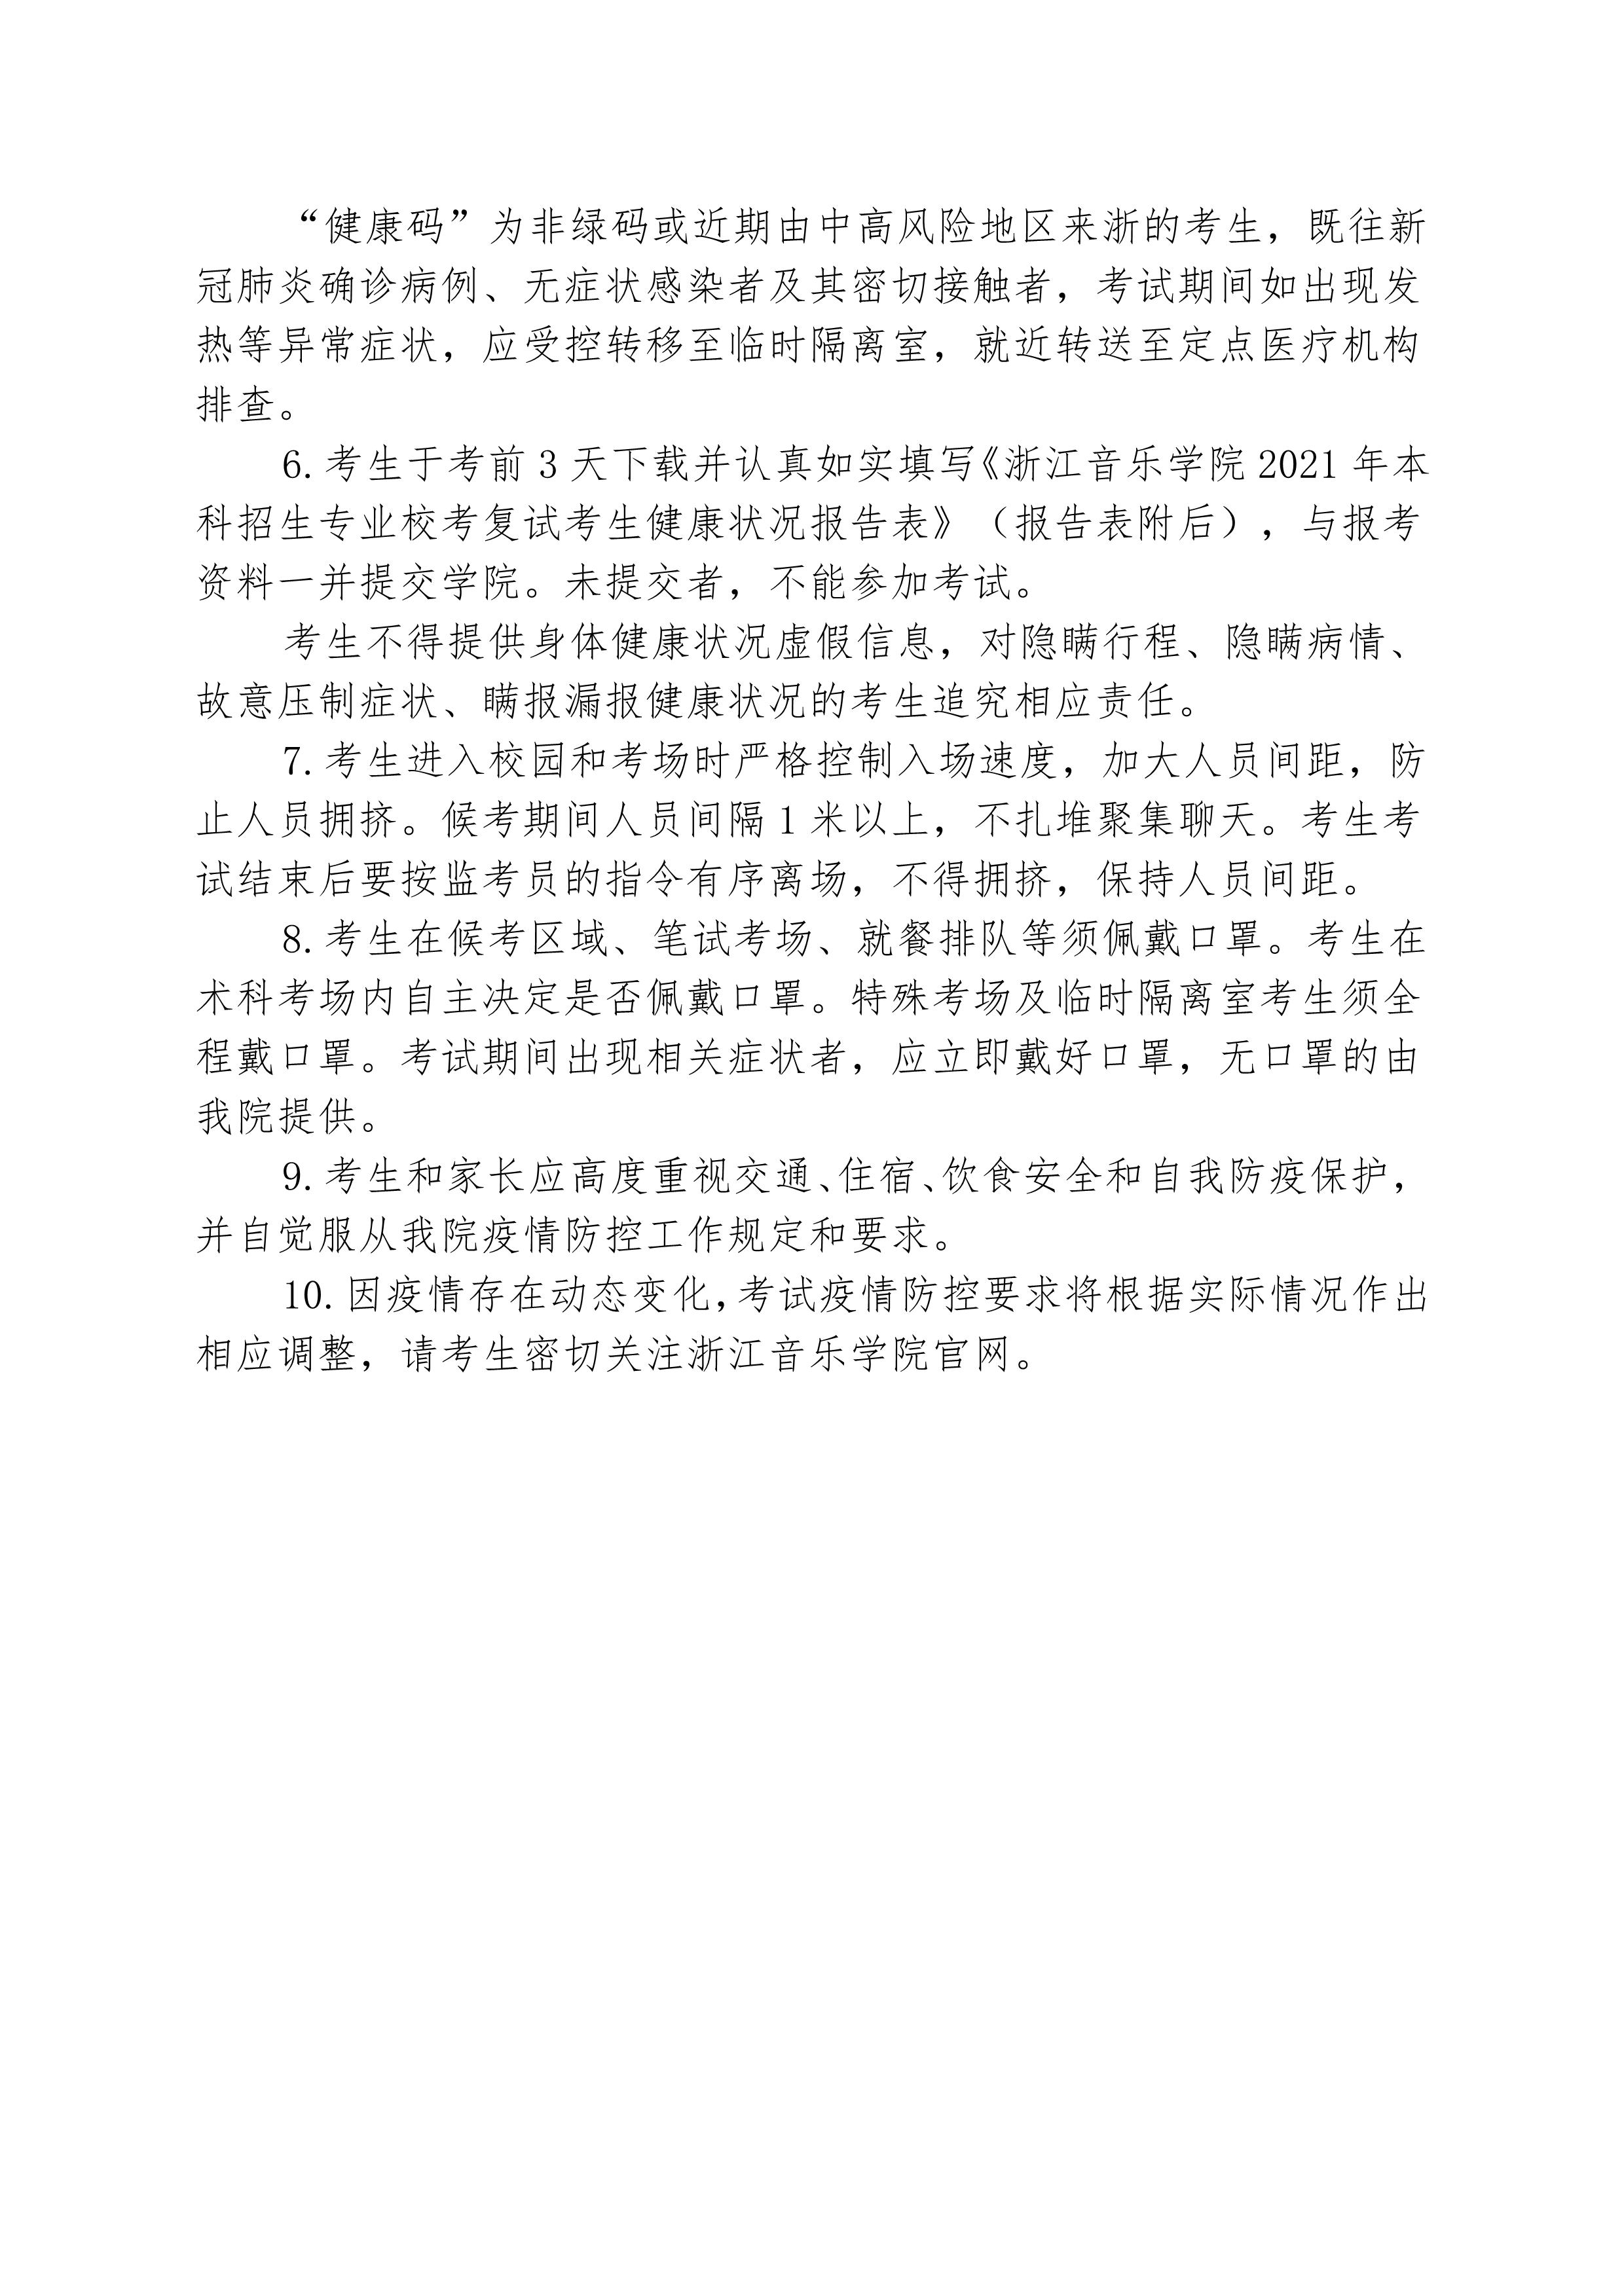 附件4：浙江音乐学院2021年本科招生专业校考复试考生疫情防控须知 _2.png